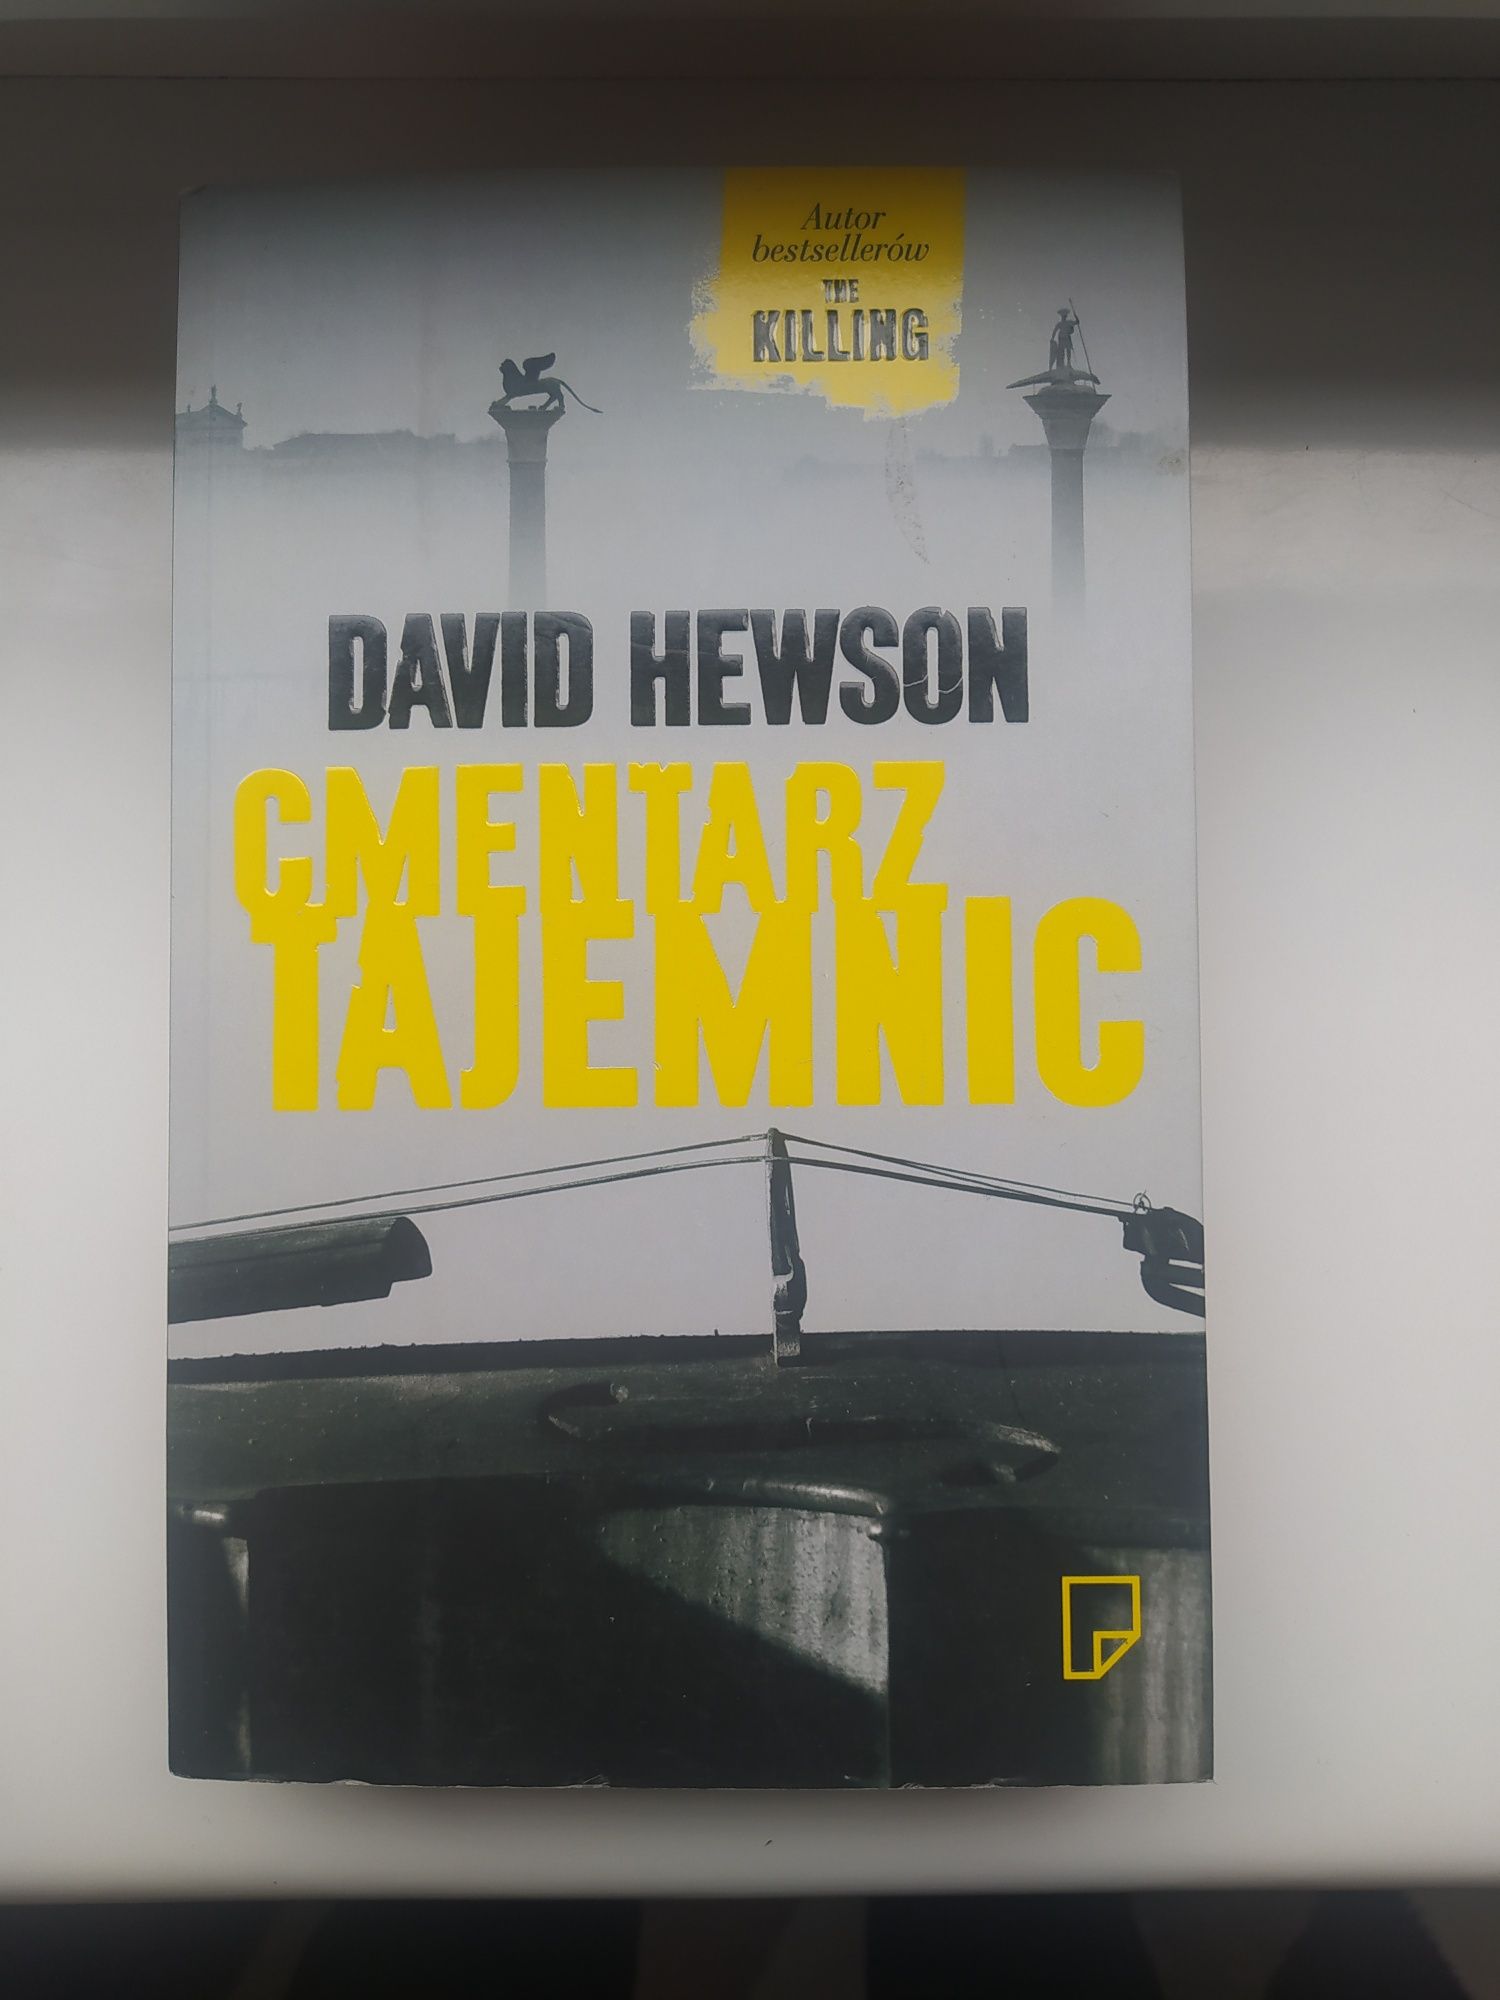 David Hewson Cmentarz tajemnic - bestseller